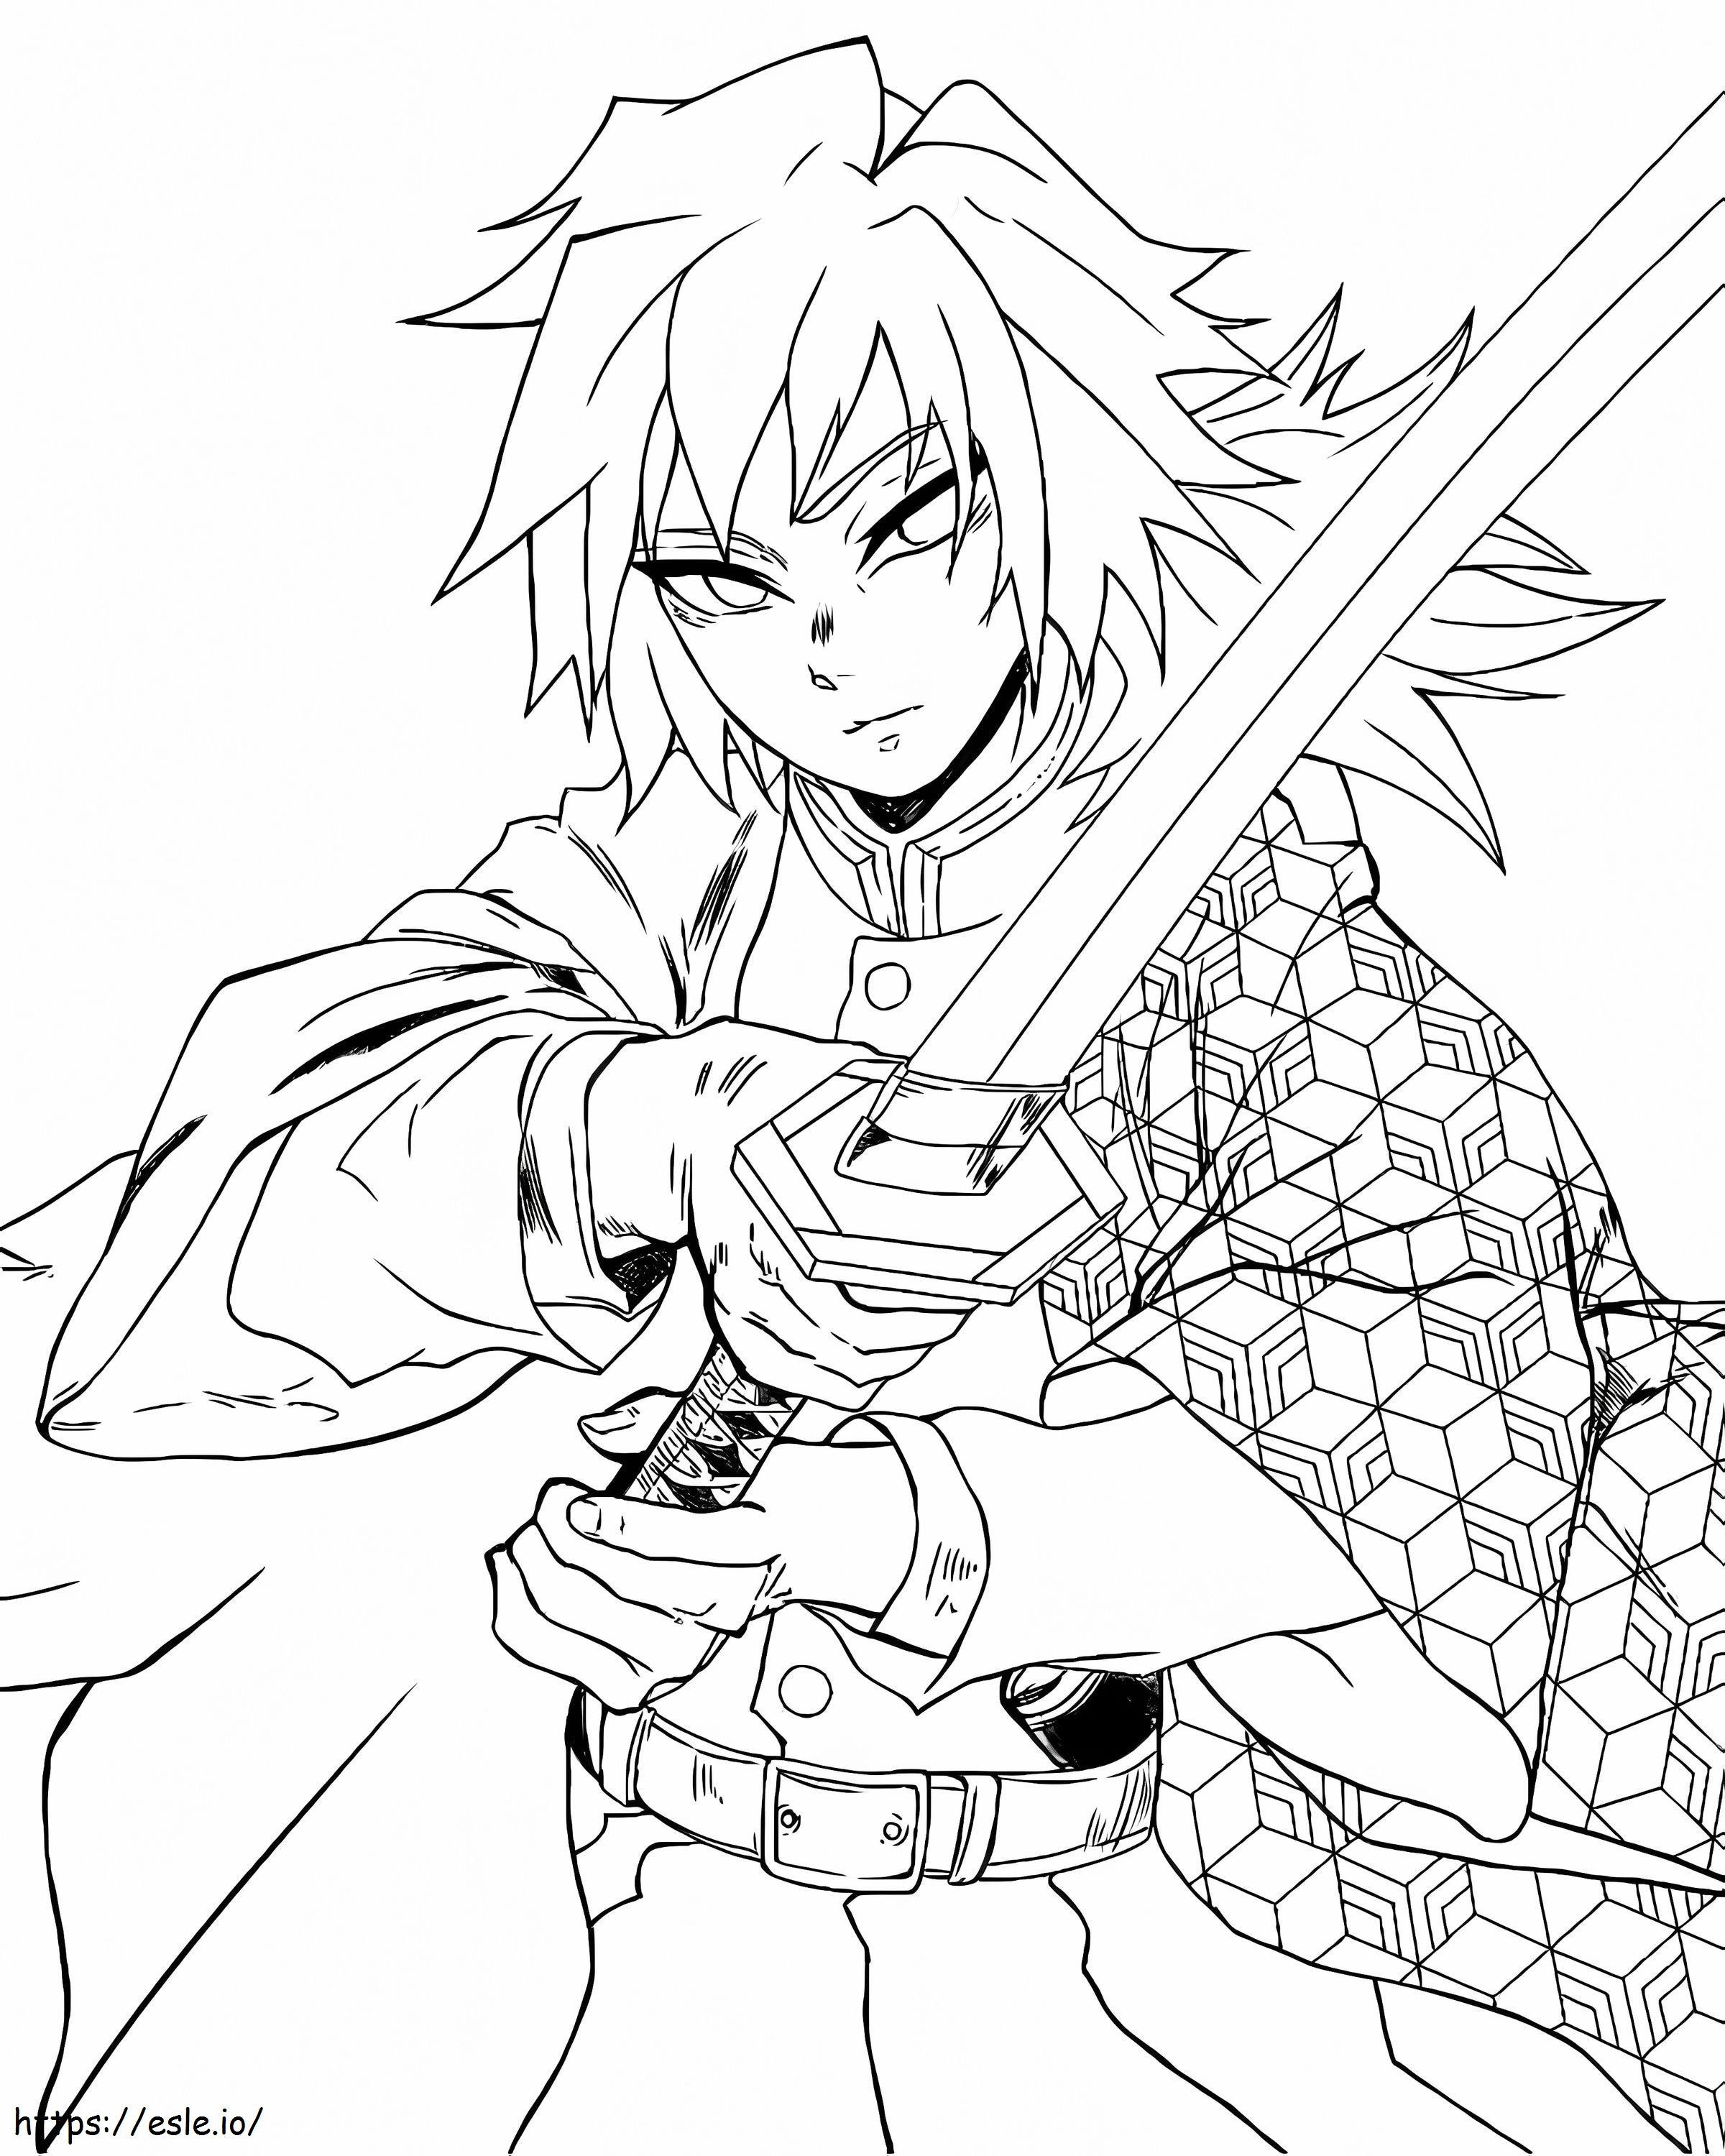 Giyu Tomioka With Sword coloring page